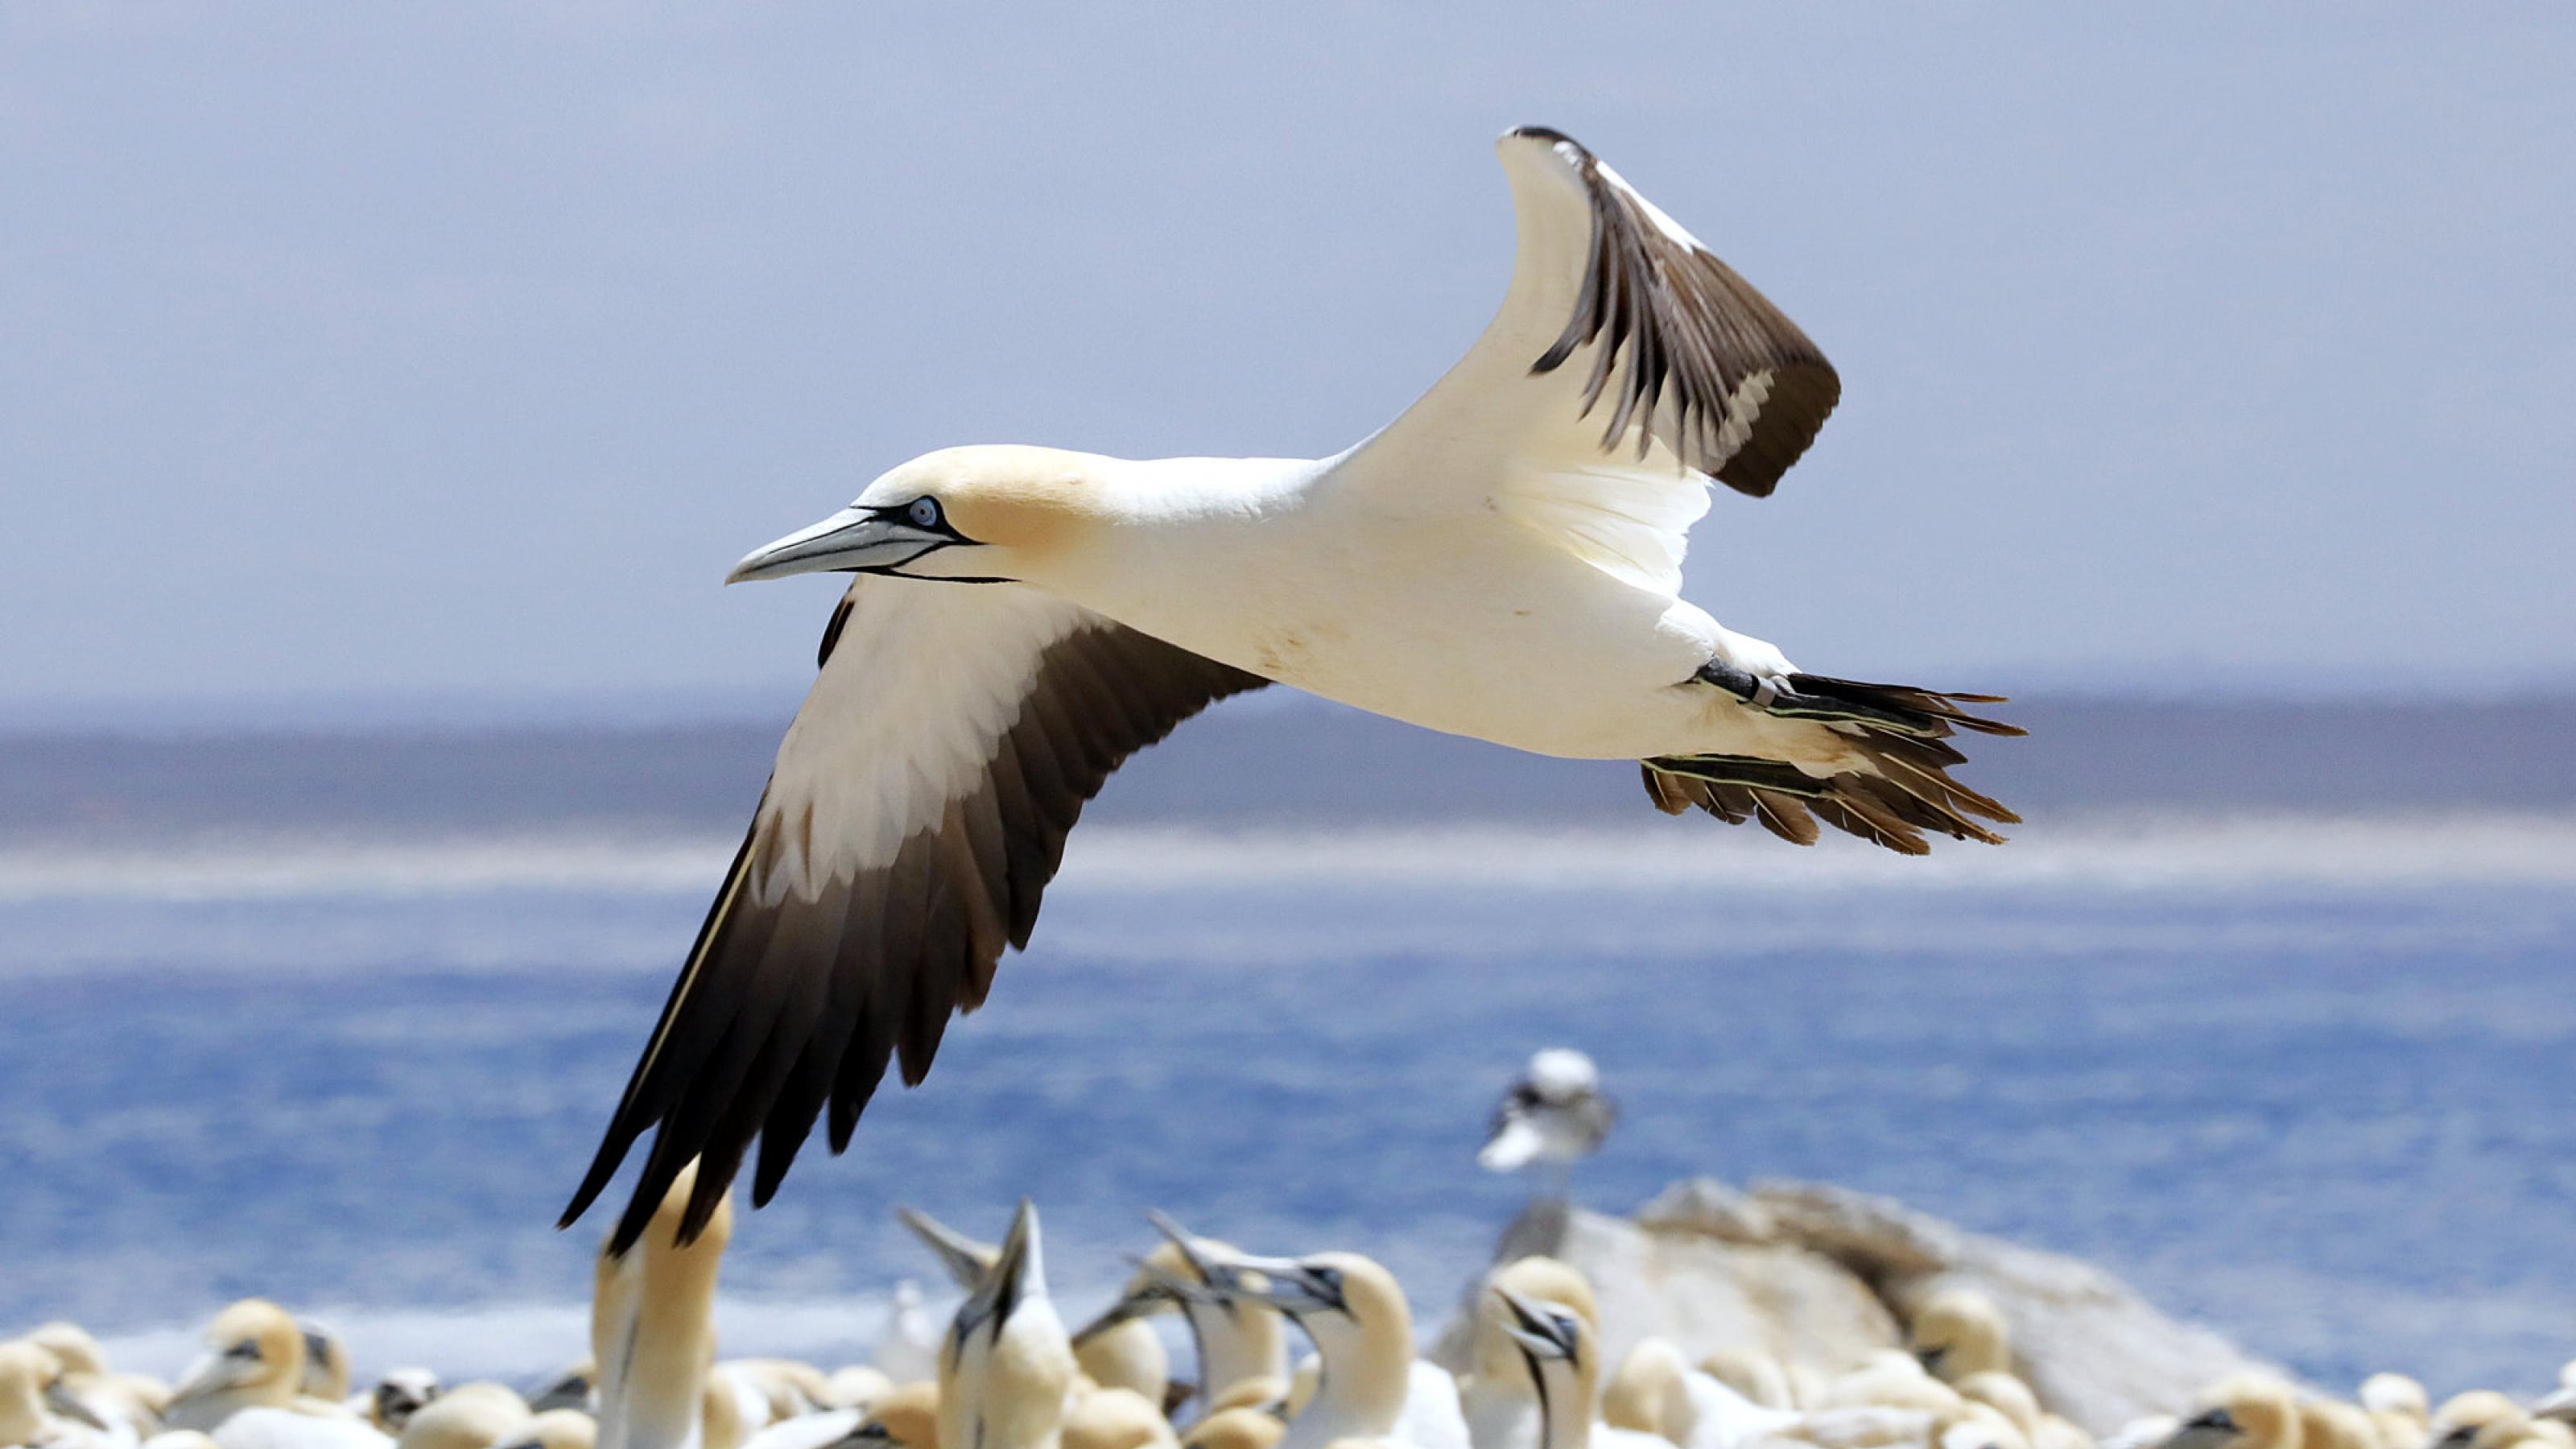 Ein weiß-schwarzer Vogel mit gelbem Kopf und blauen Augenringen fliegt mit ausgebreiteten Flügeln über seine Artgenossen hinweg. Im Hintergrund eine Meeresbucht.